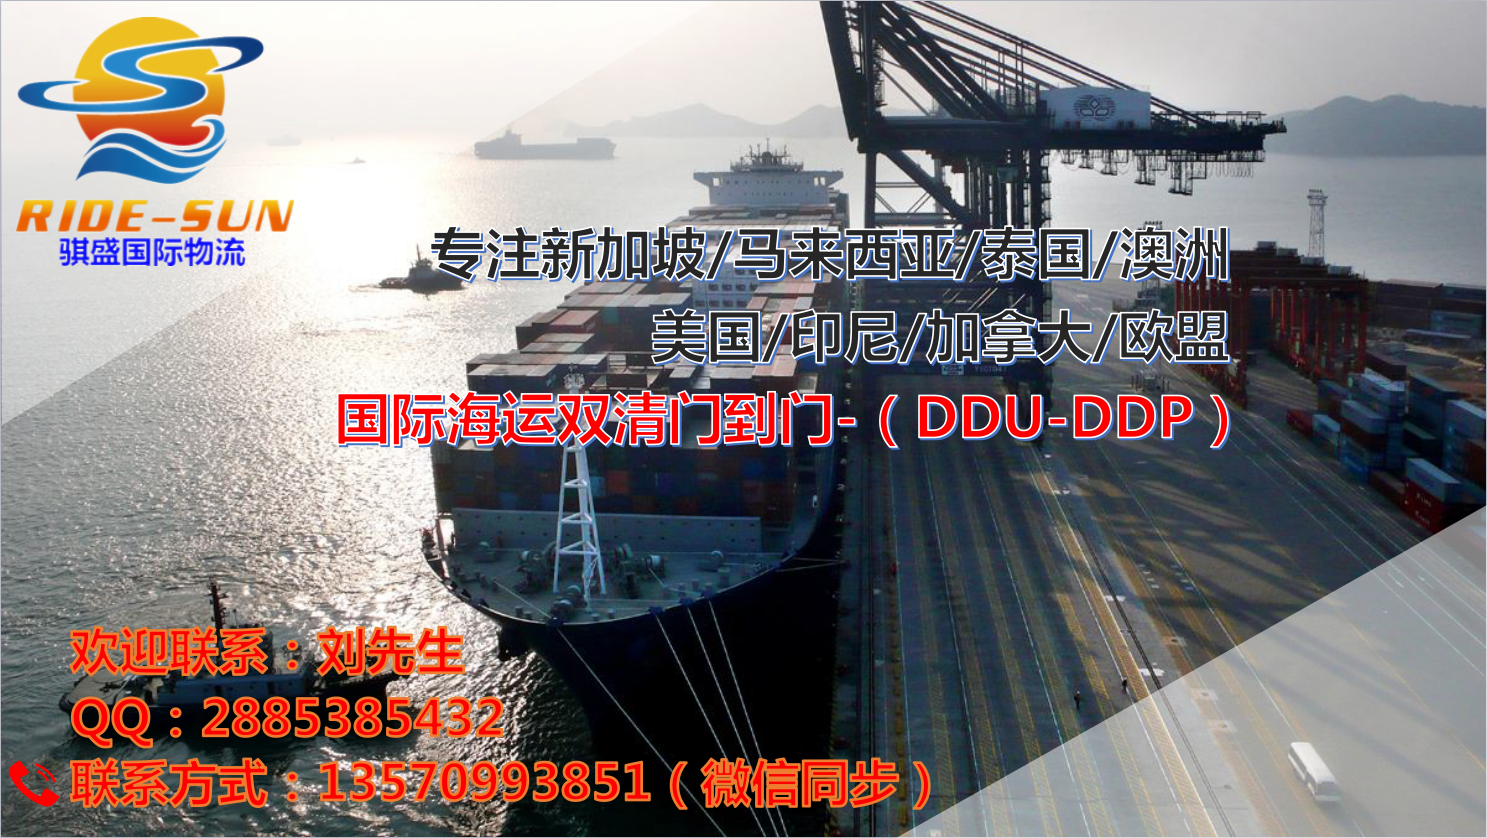 中国至迪拜海运双清门到门全包专线 搬家移民-广州到迪拜海运费